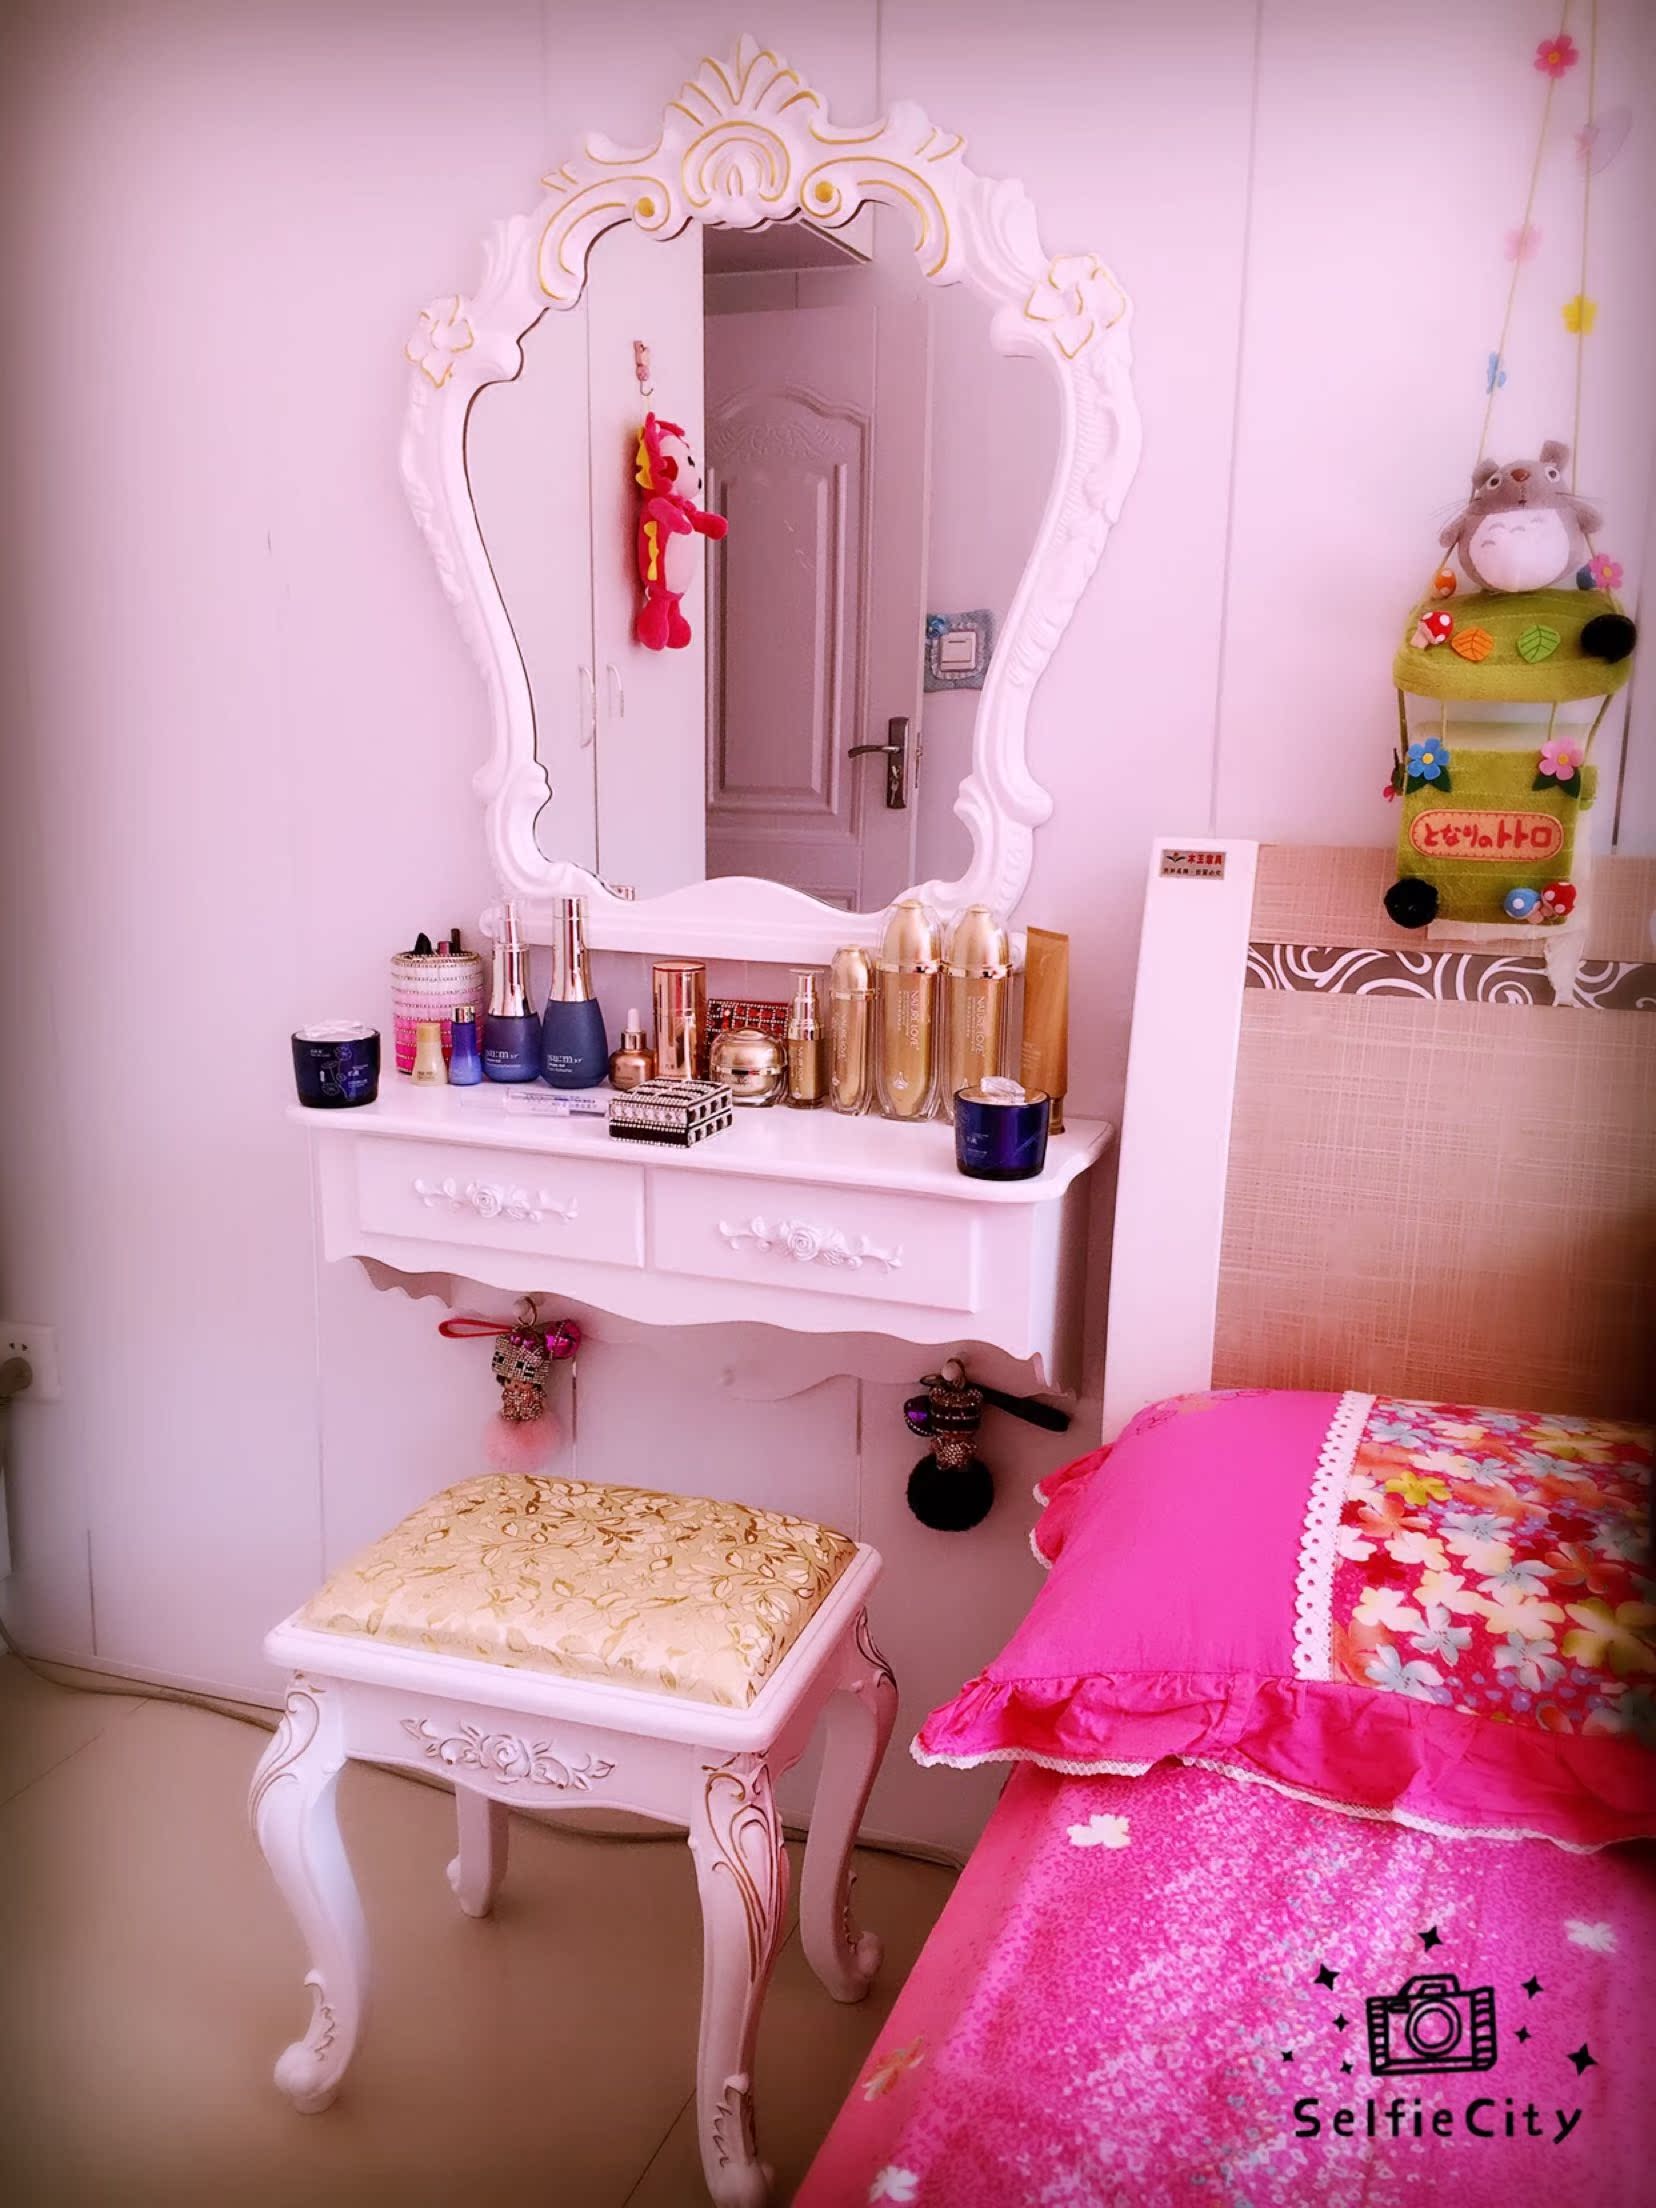 壁挂梳妆台镜卧室韩式欧式现代简约白色田园小户型化妆台梳妆桌